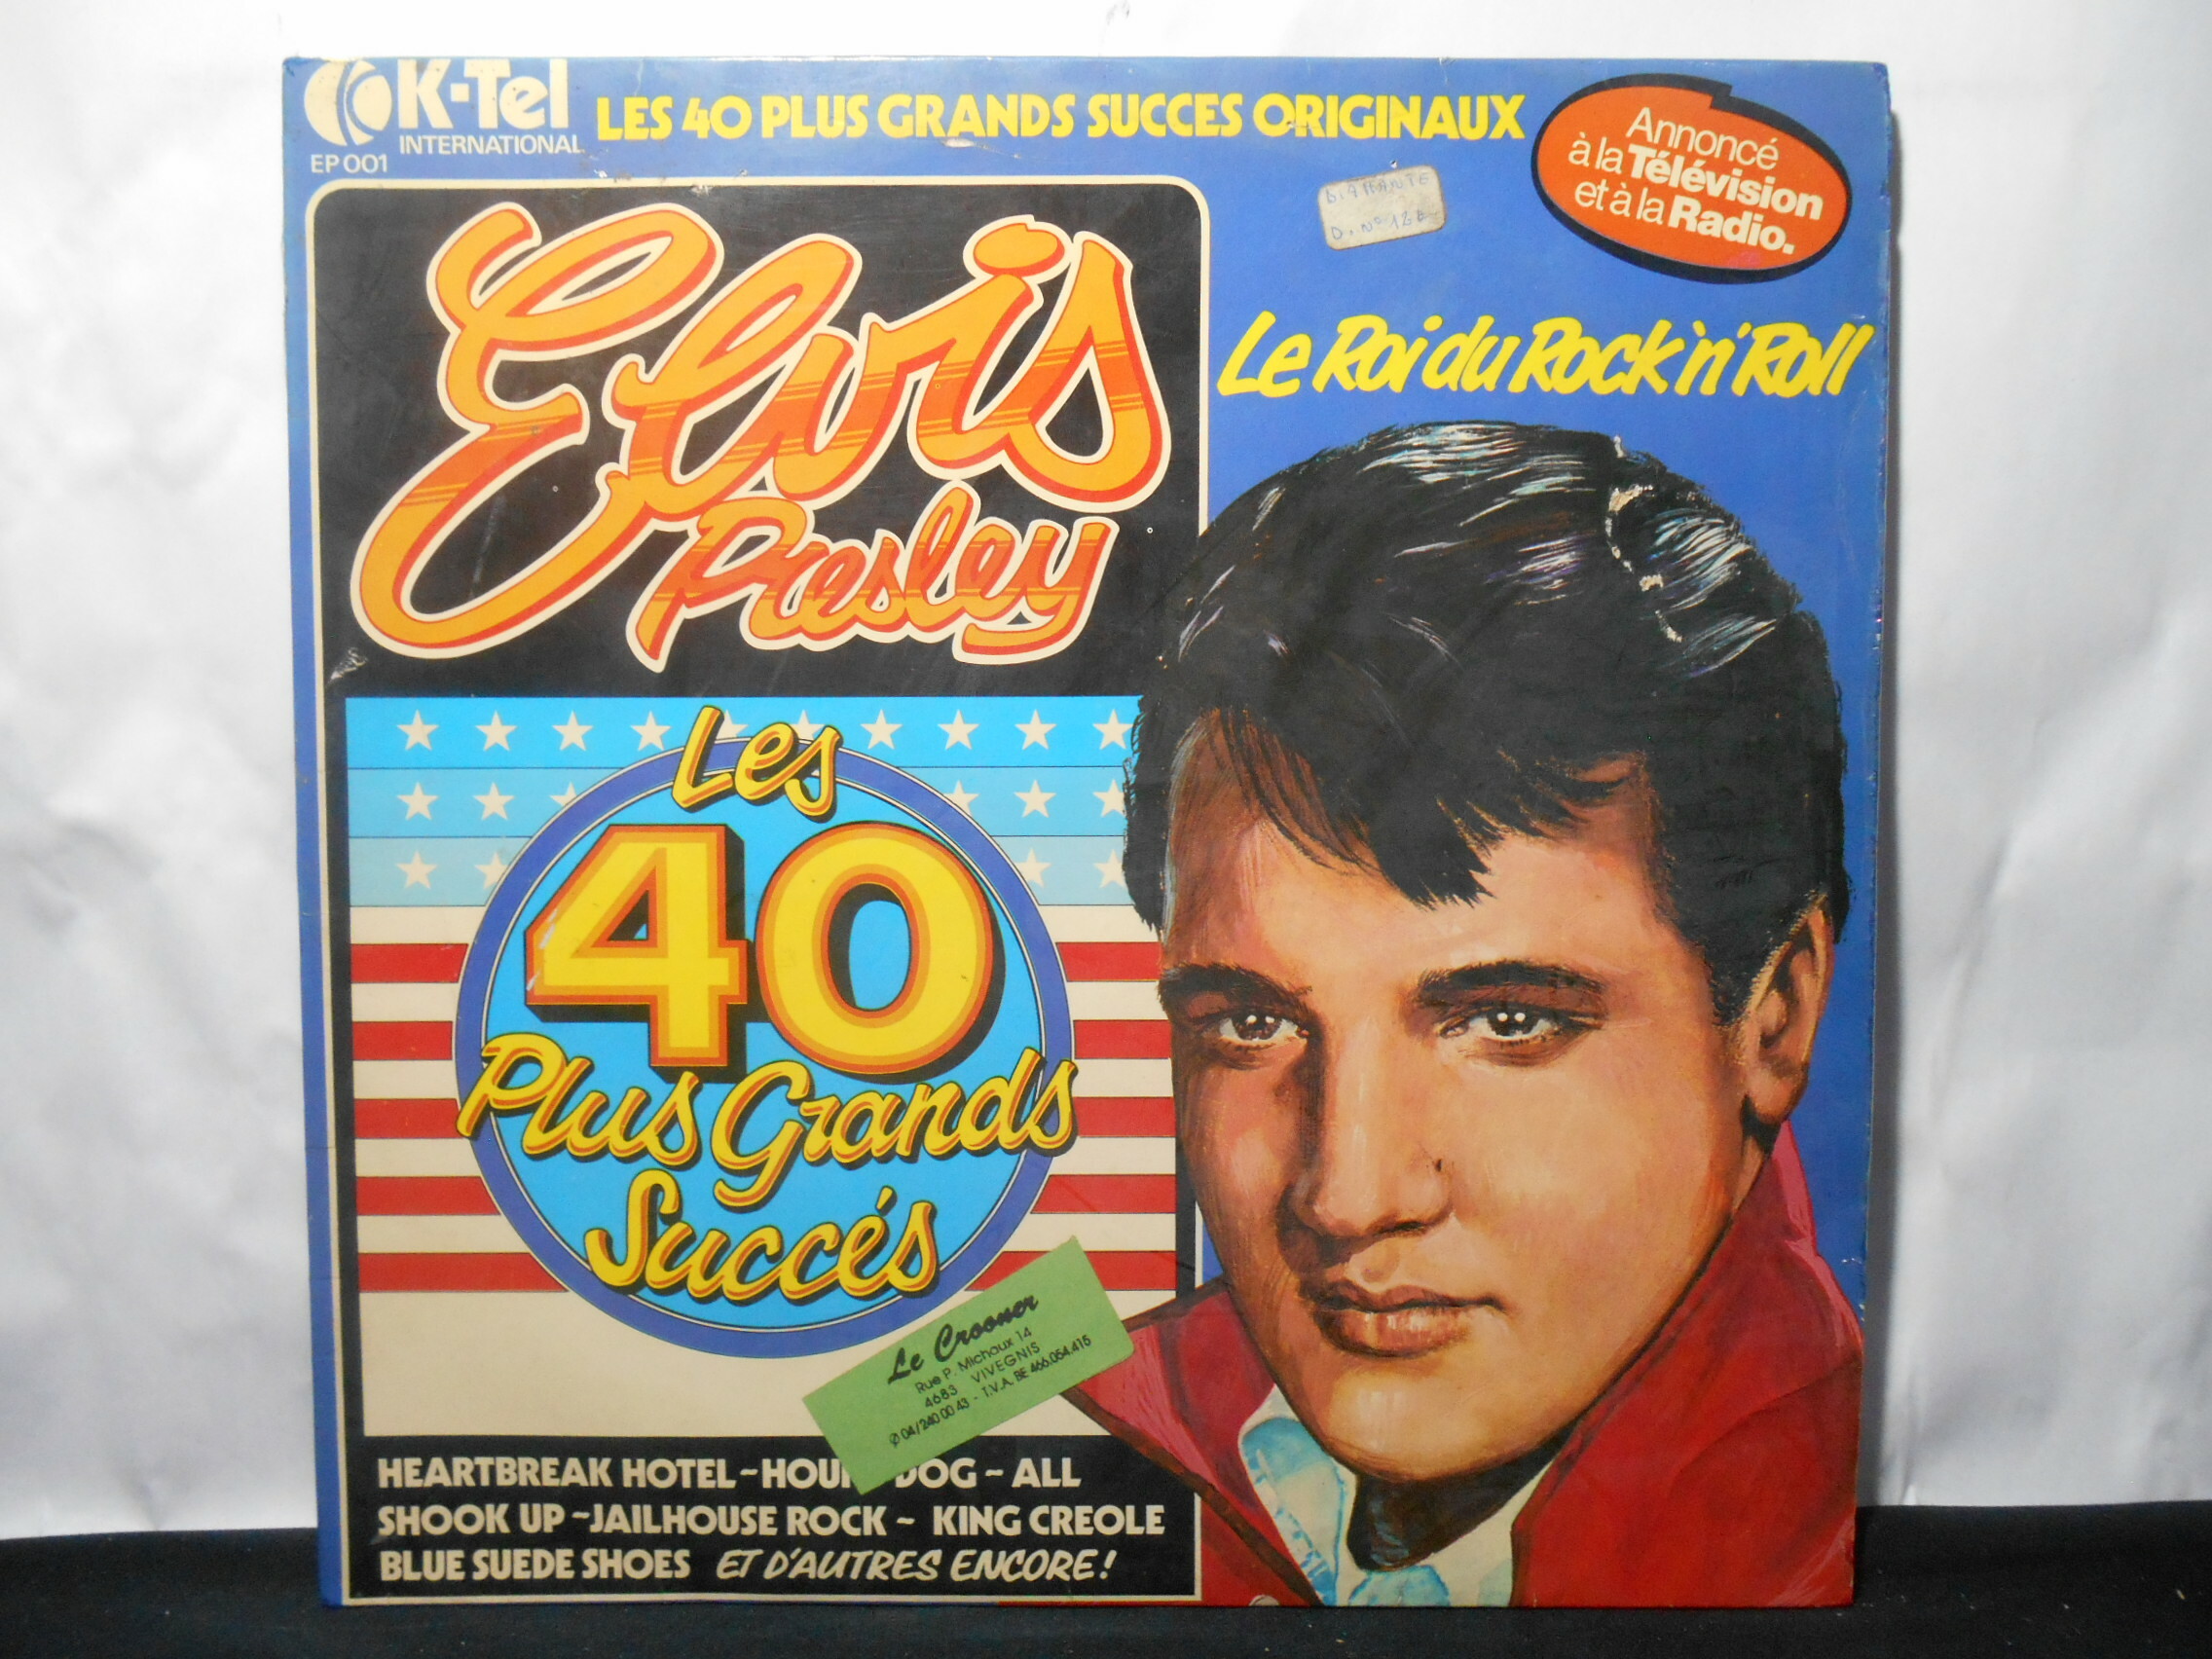 Vinil - Elvis Presley - Les 40 Plus Grands Succés Le Roi du Rock n Roll (EU/Duplo)